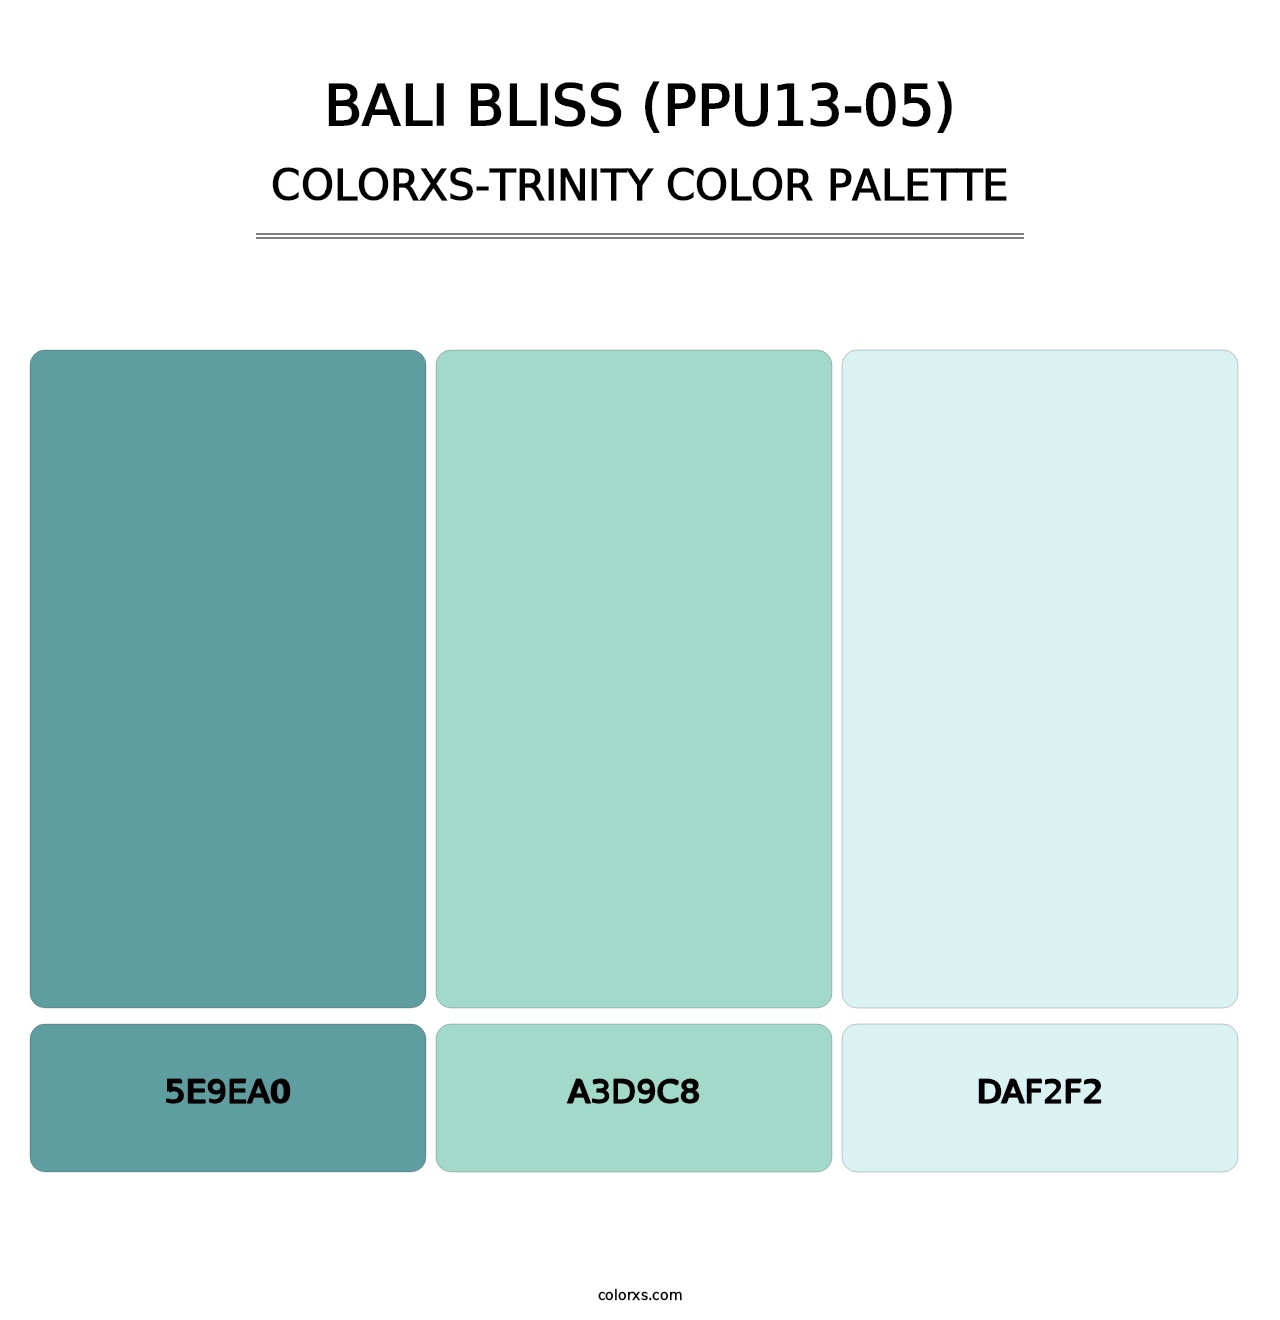 Bali Bliss (PPU13-05) - Colorxs Trinity Palette